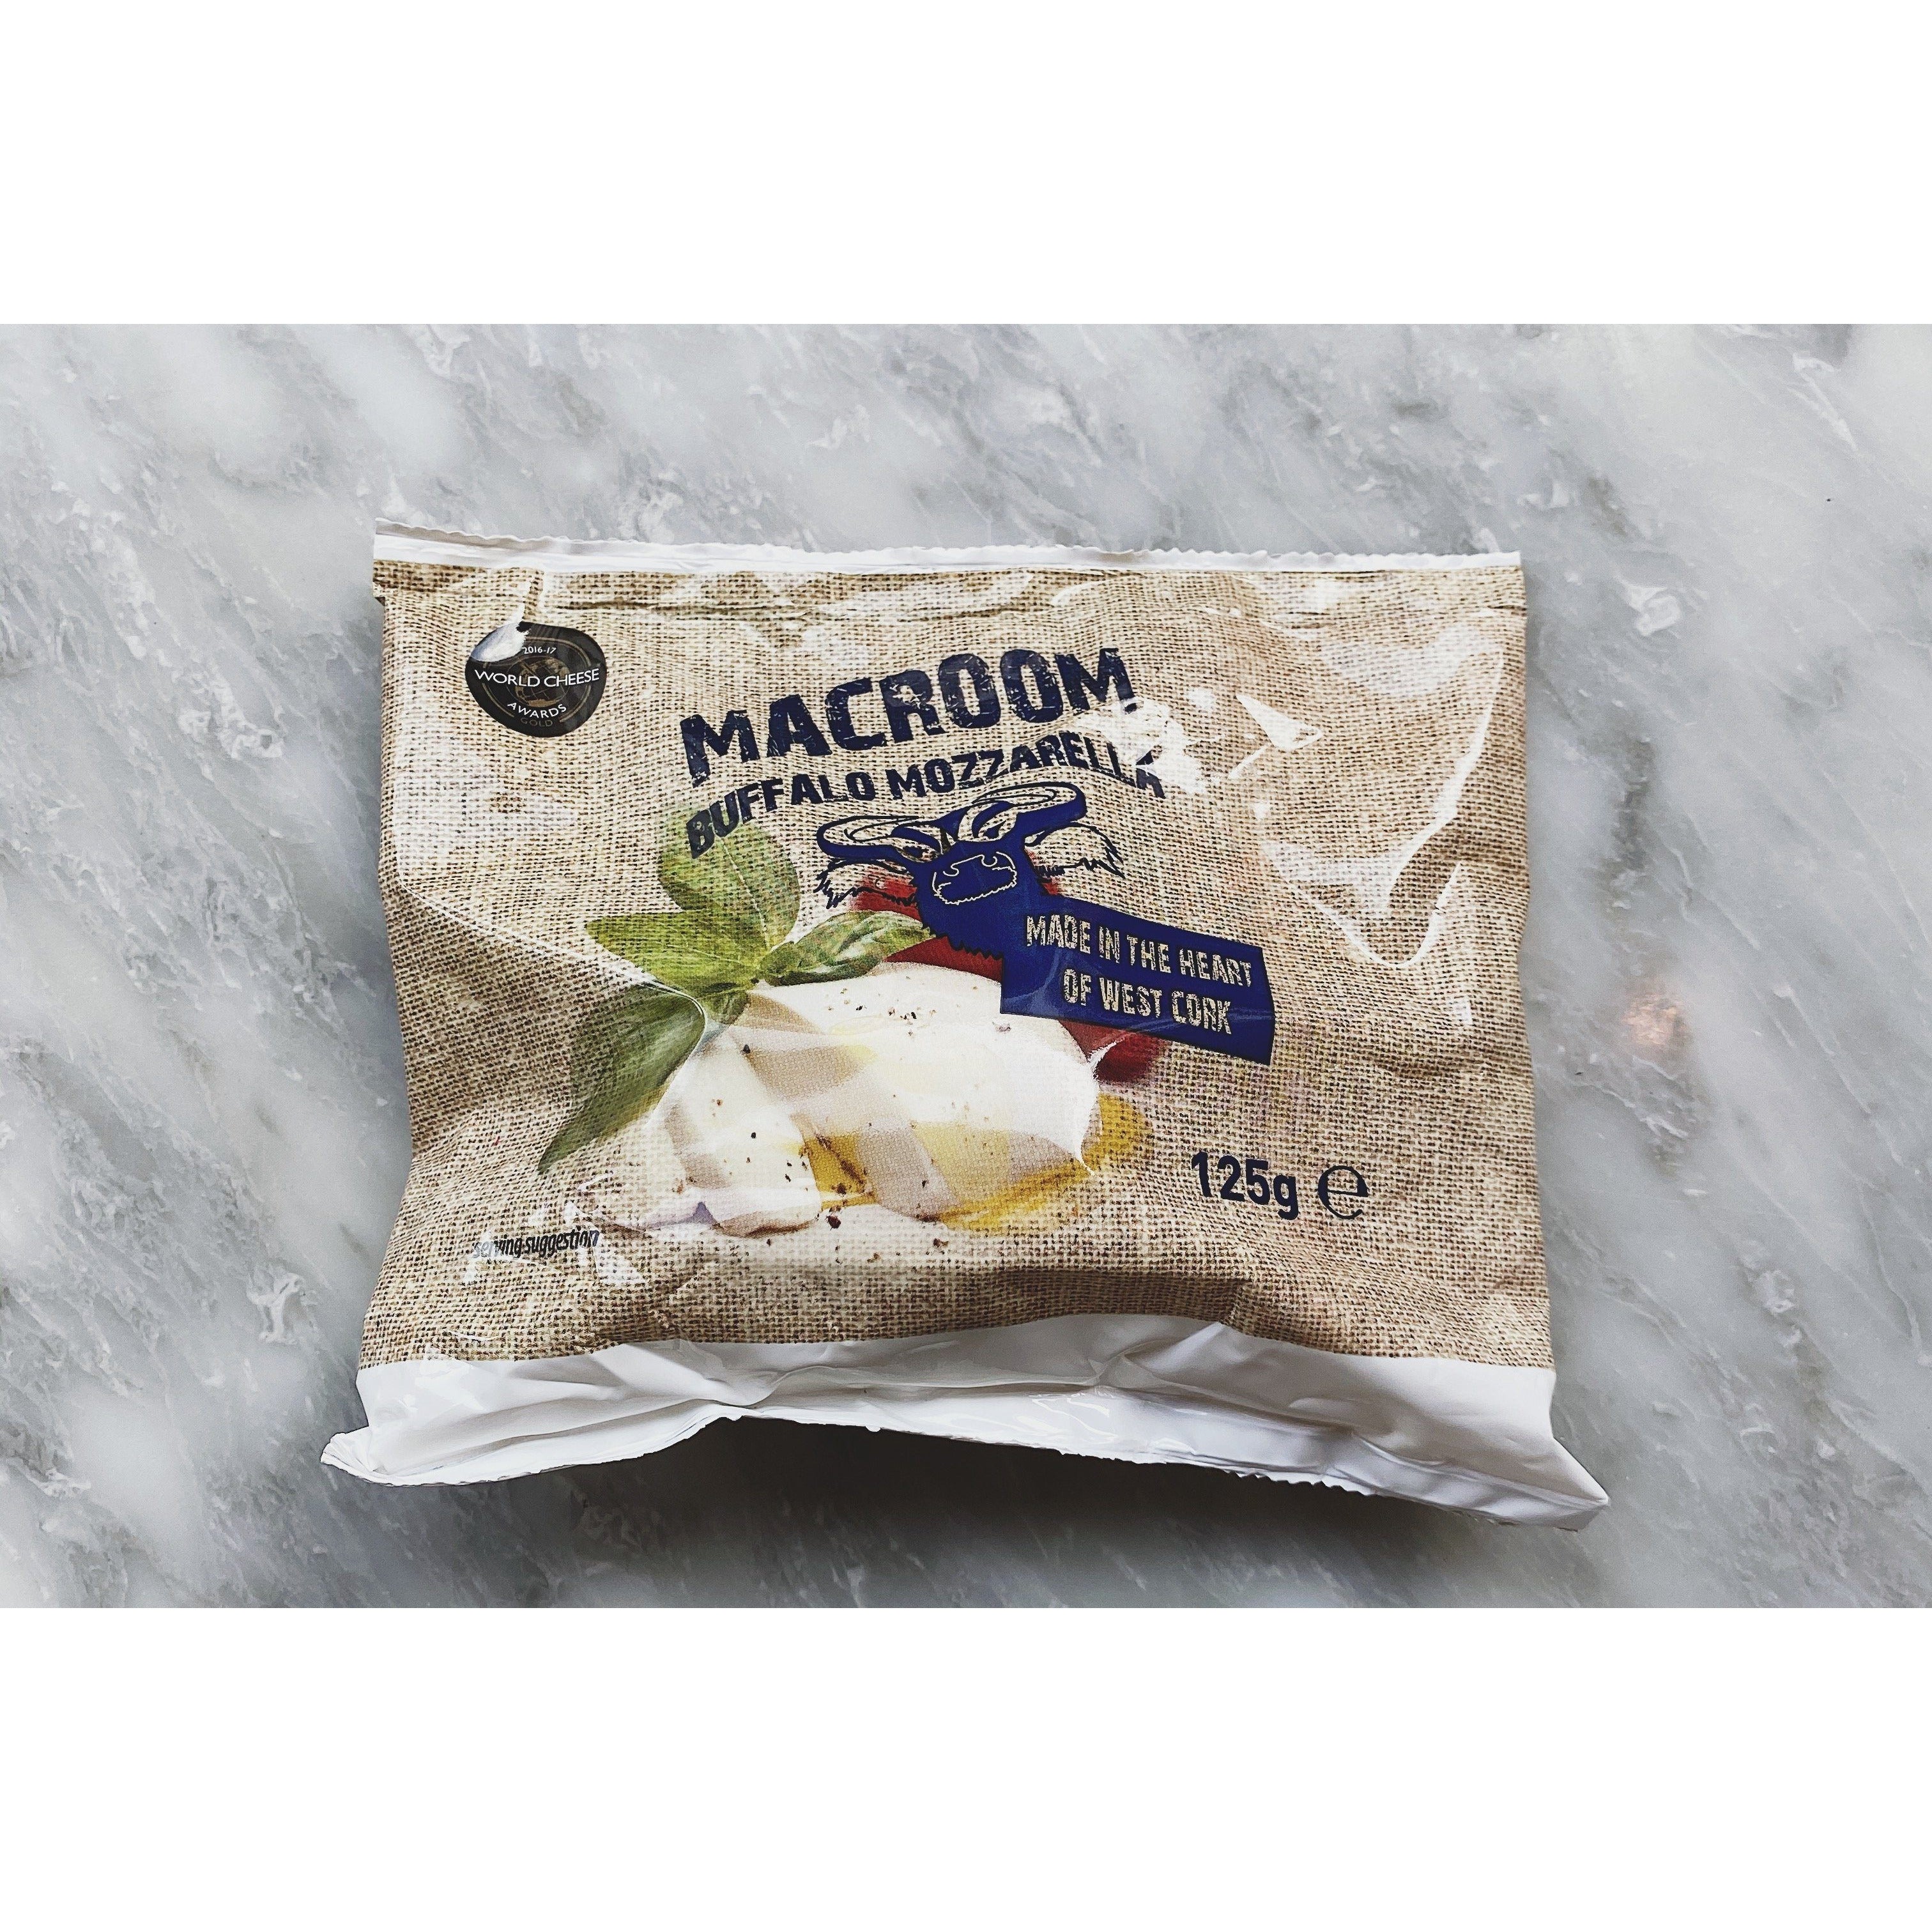 Macroom Mozzarella - Kate's Kitchen